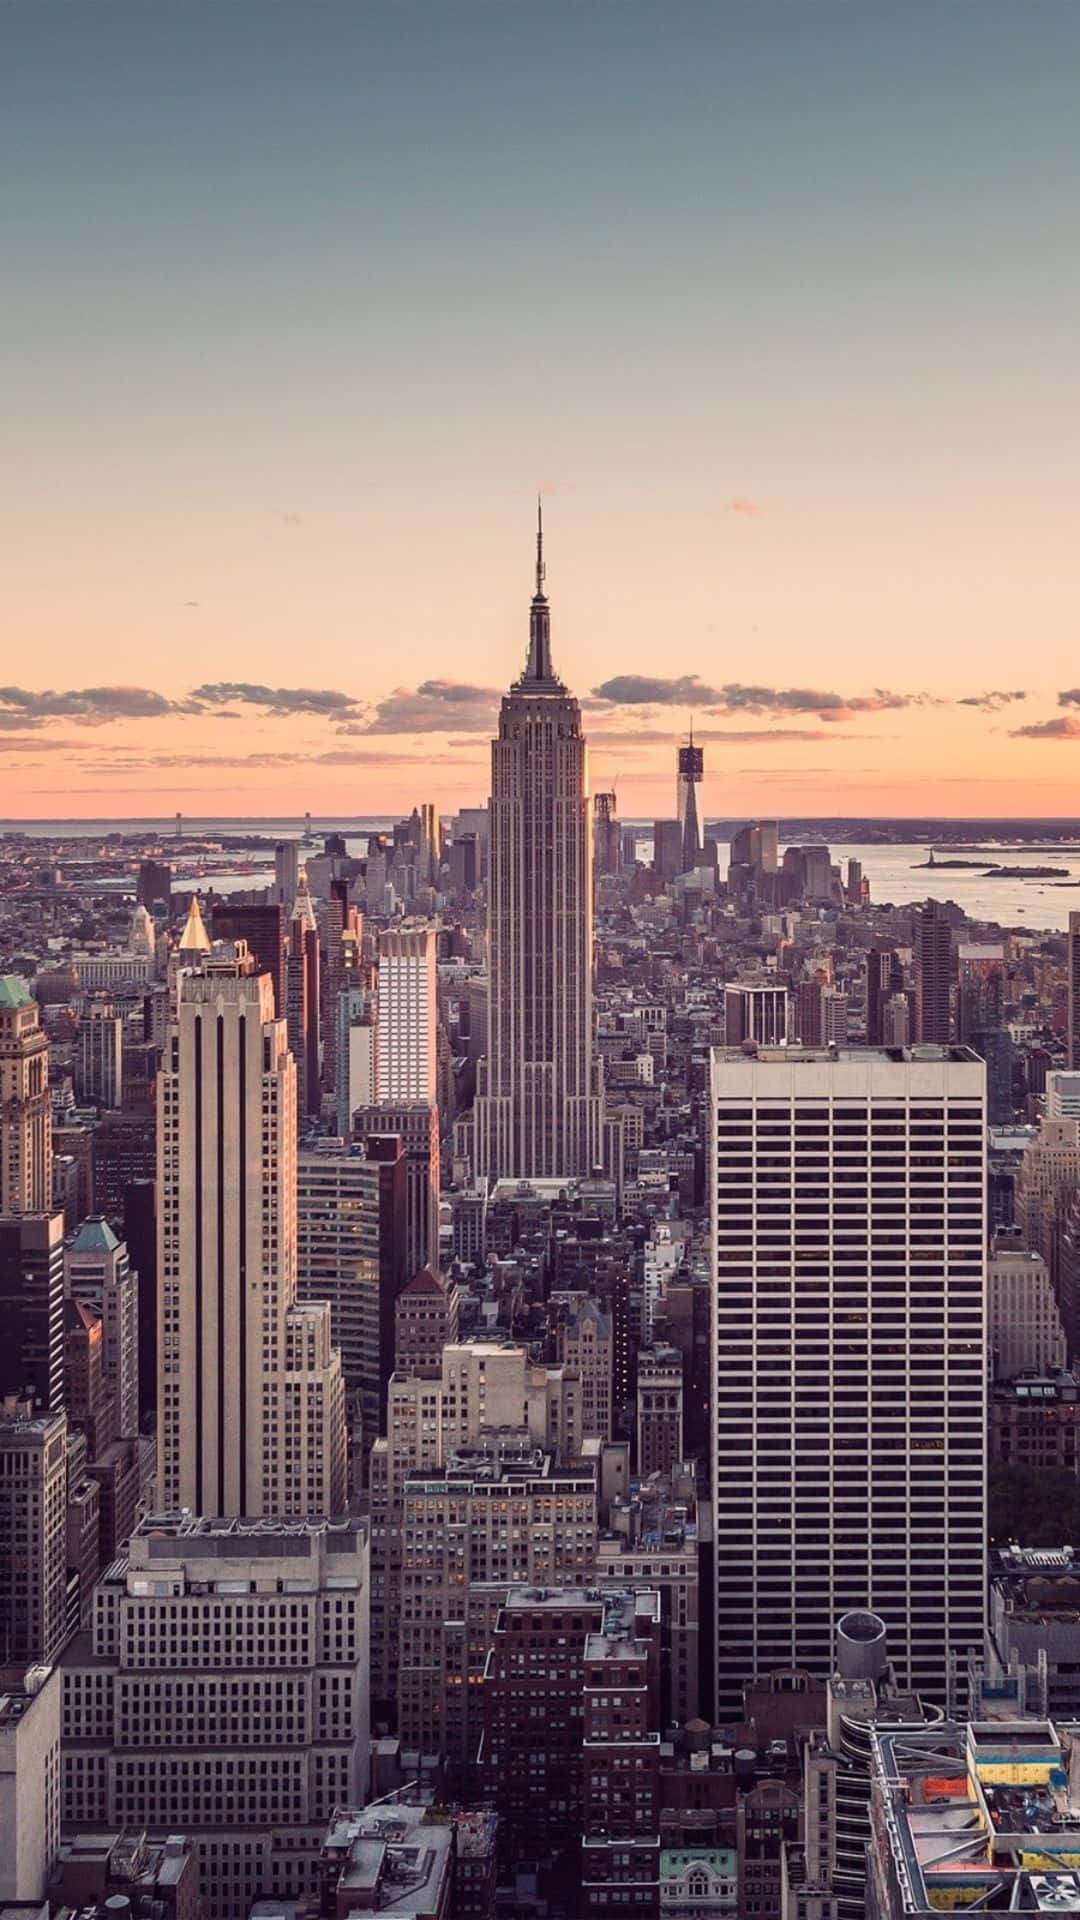 Vislumbreo Mundo Android Surgindo Em Meio Aos Arranha-céus Imponentes Da Cidade De Nova York.